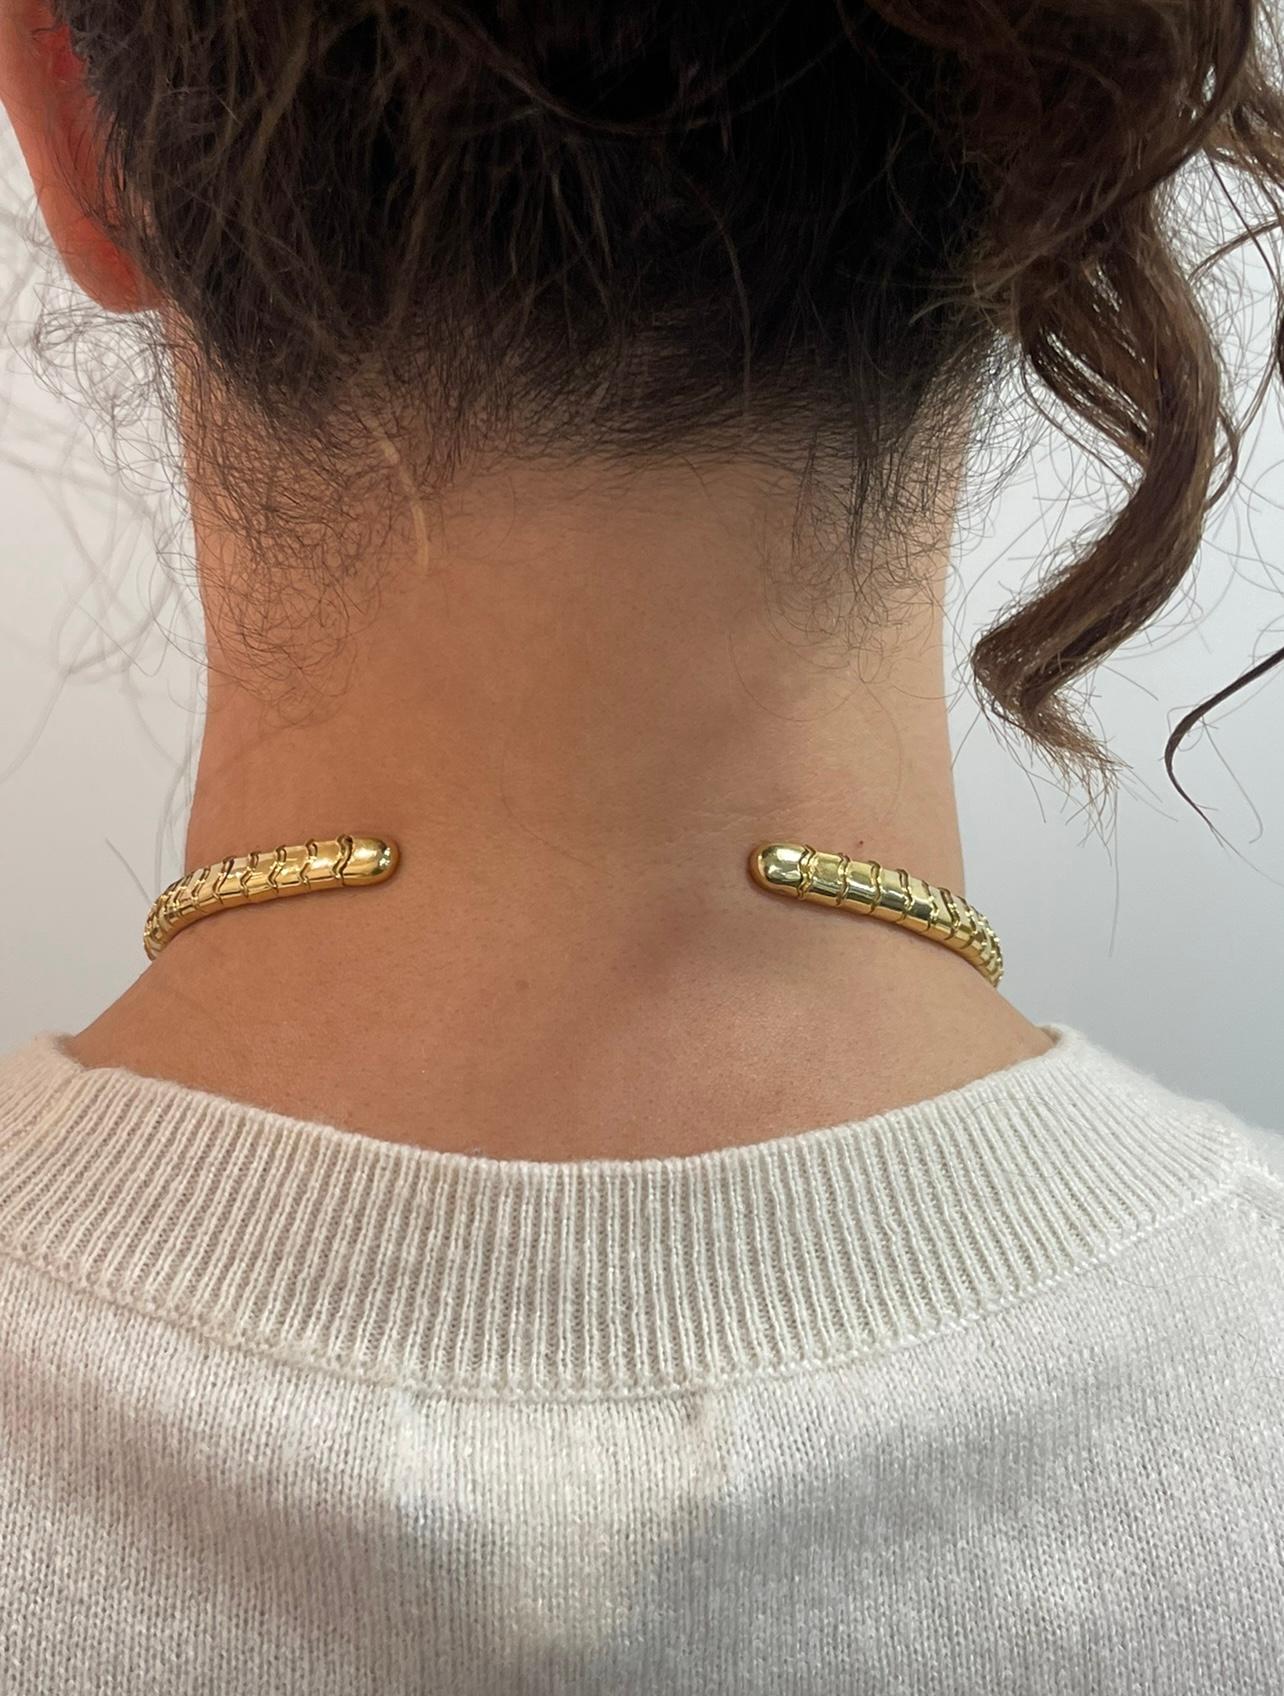 Modern Marina B 18k Yellow Gold Diamond Choker Necklace